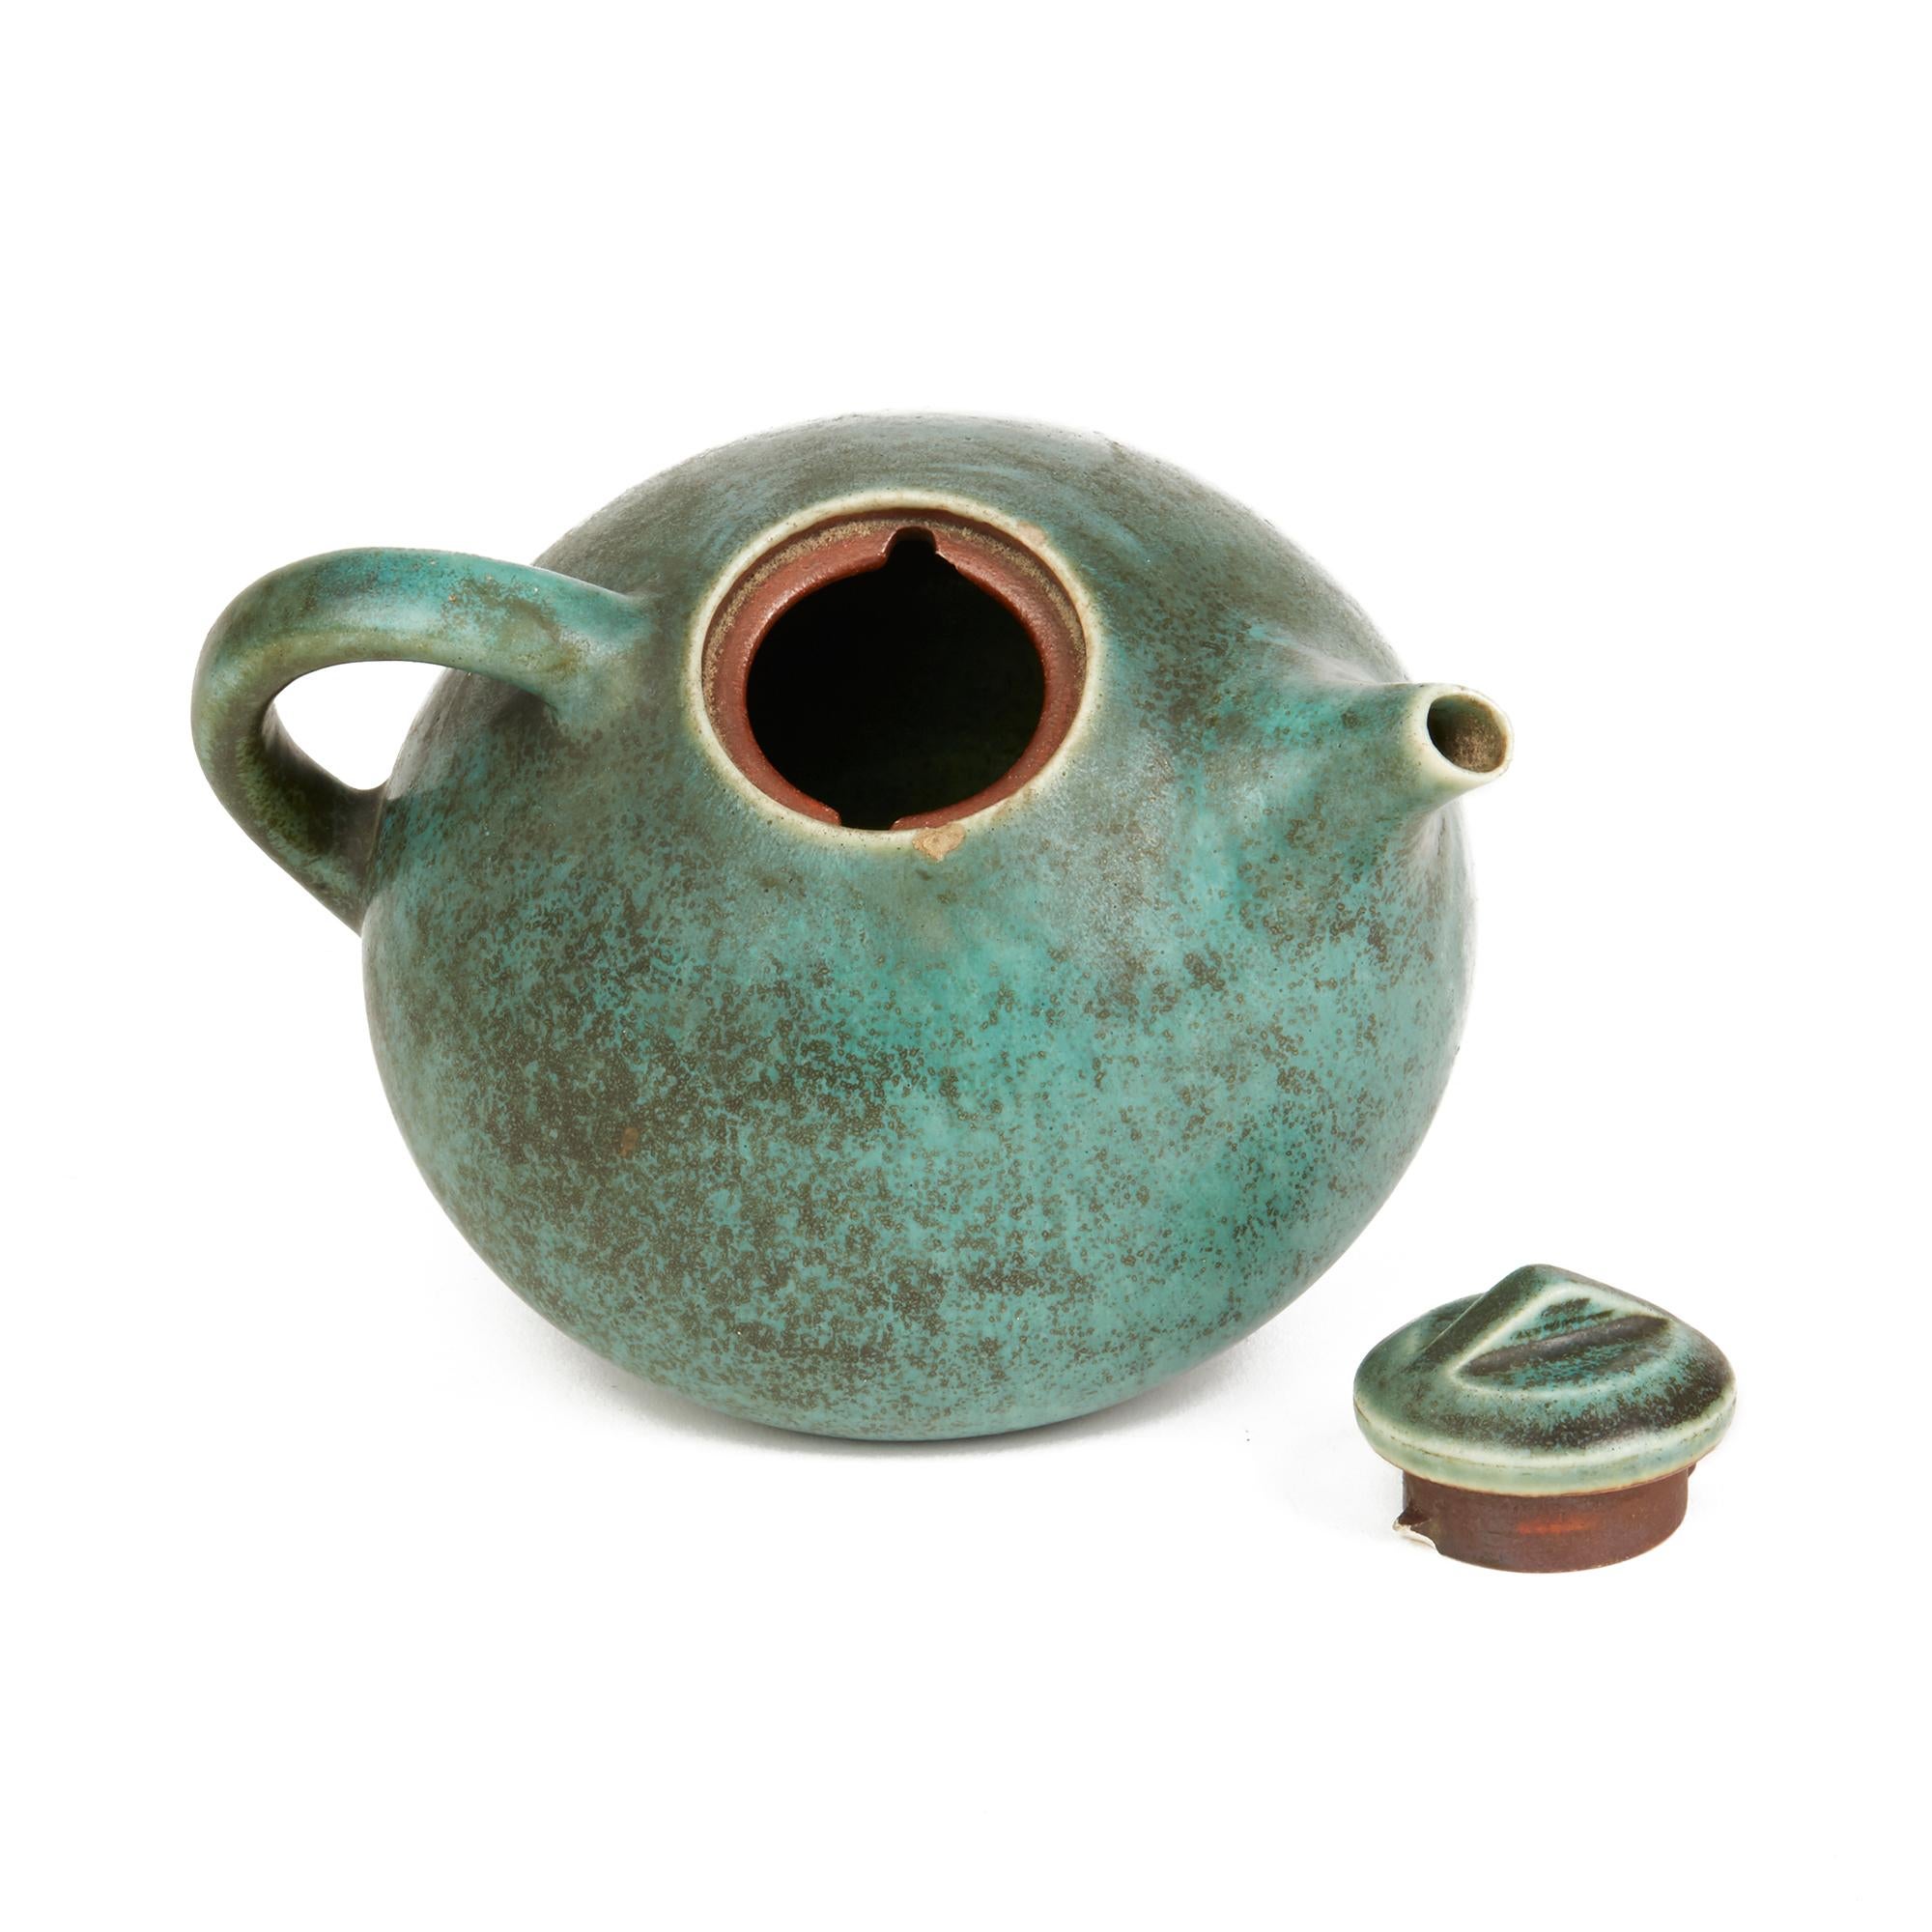 Scandinavian Modern Vintage Danish Saxbo Eva Stæhr-nielsen Green Art Pottery Teapot